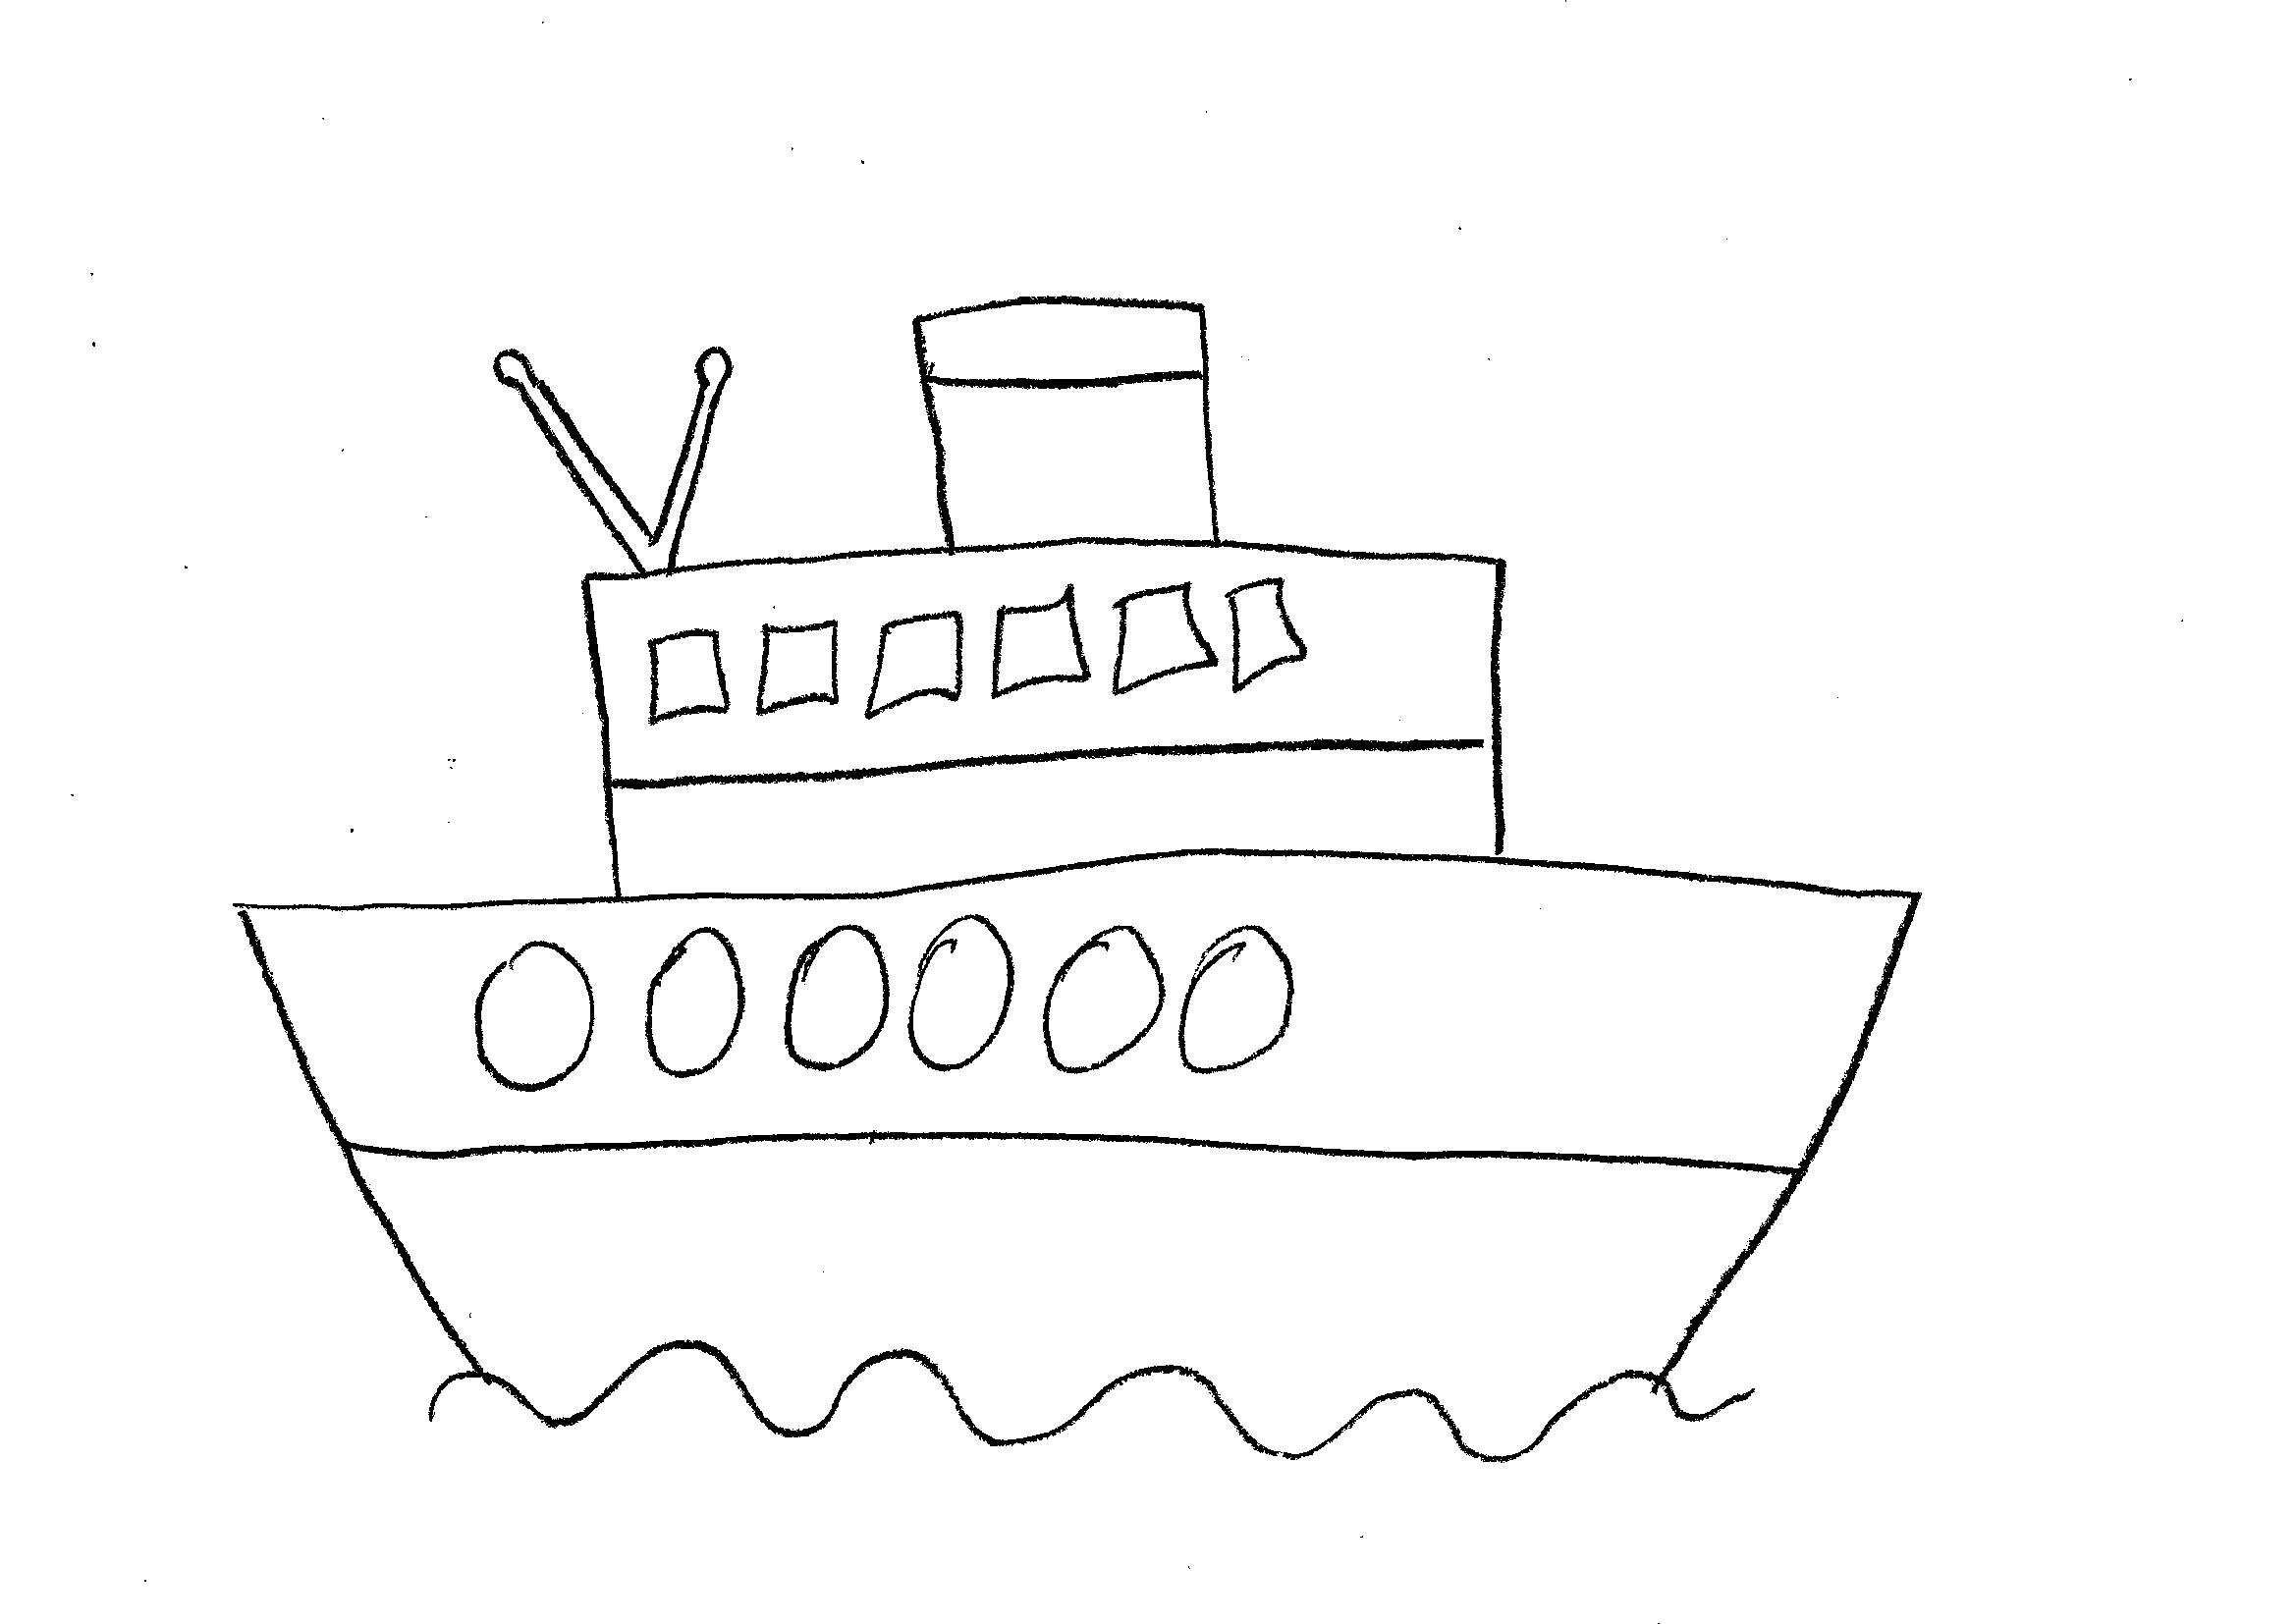 Рисование парохода